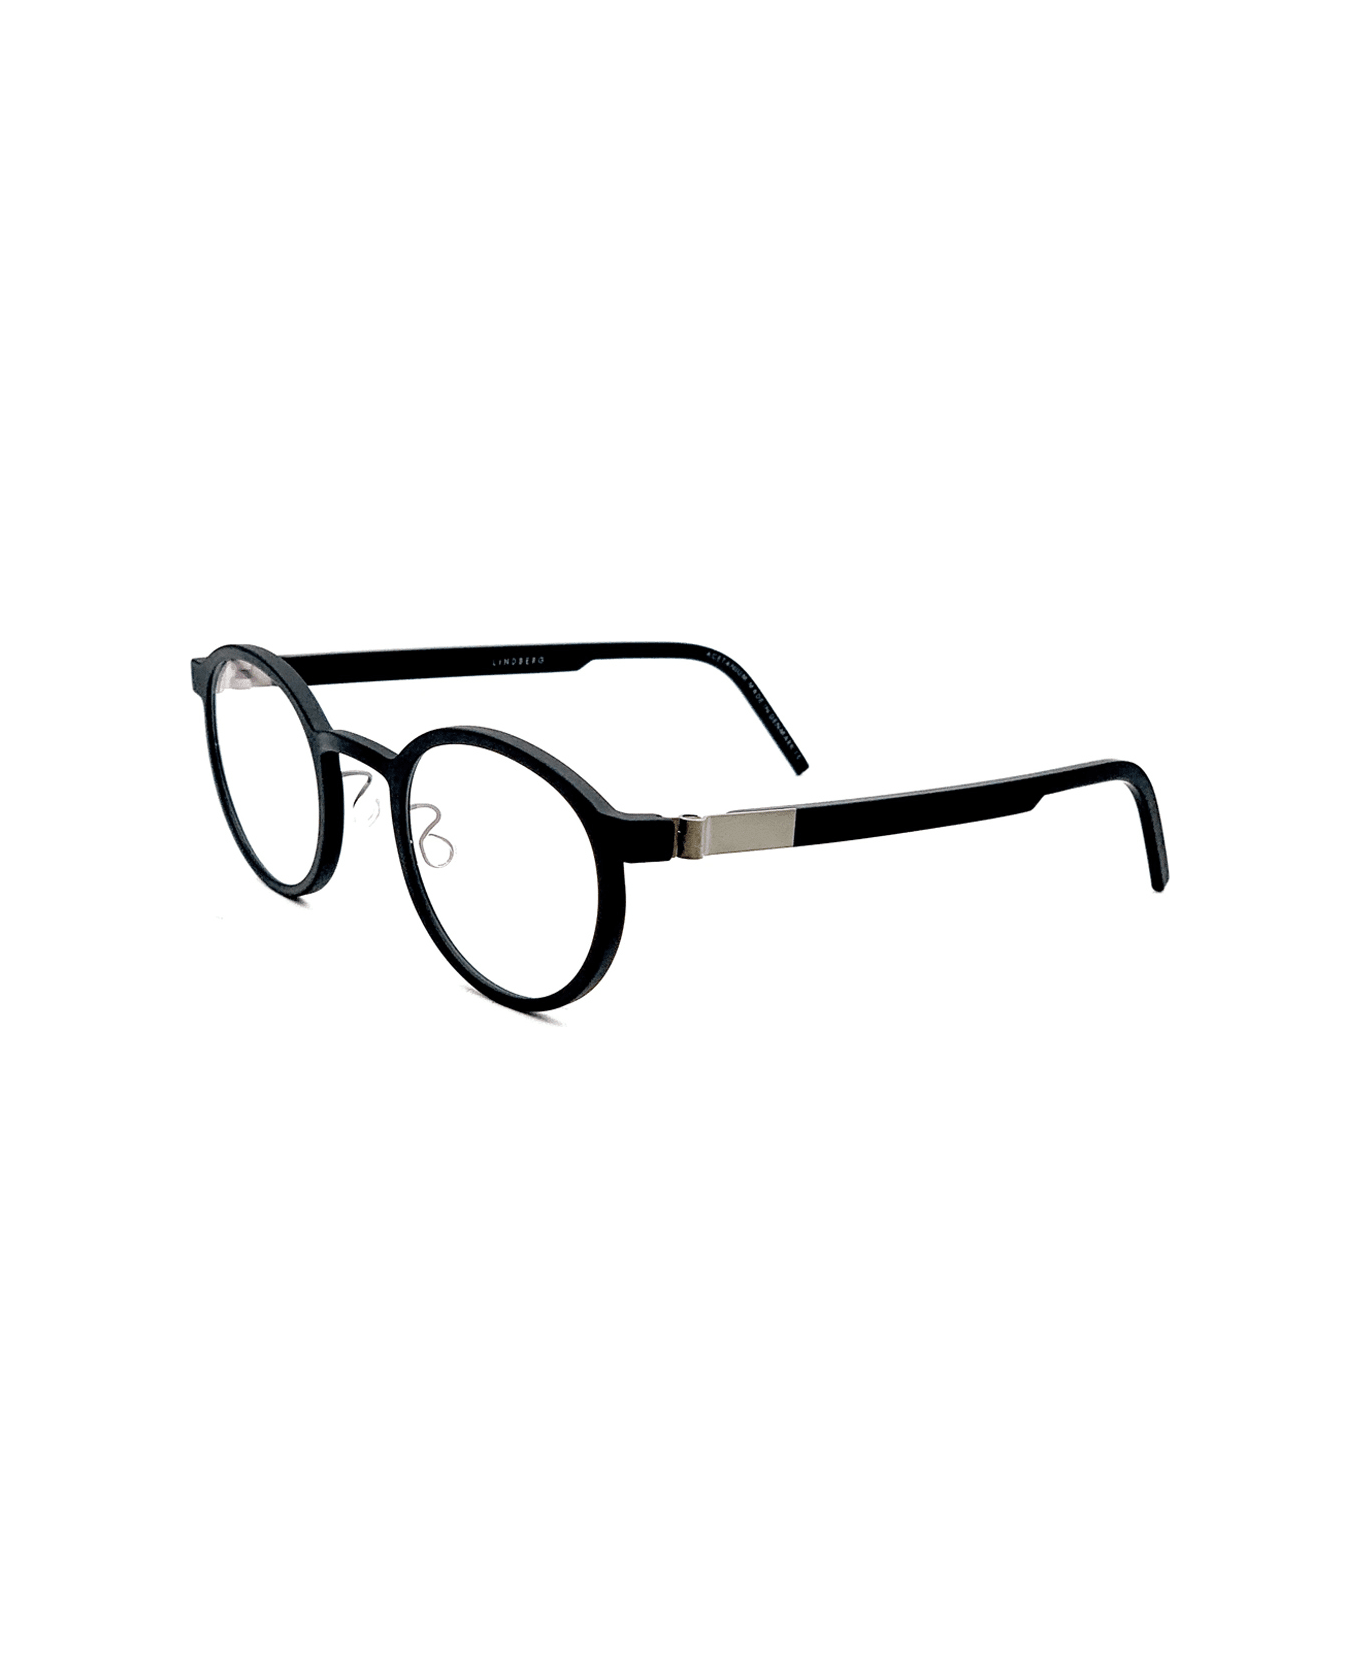 LINDBERG Acetanium 1014 Glasses - Nero